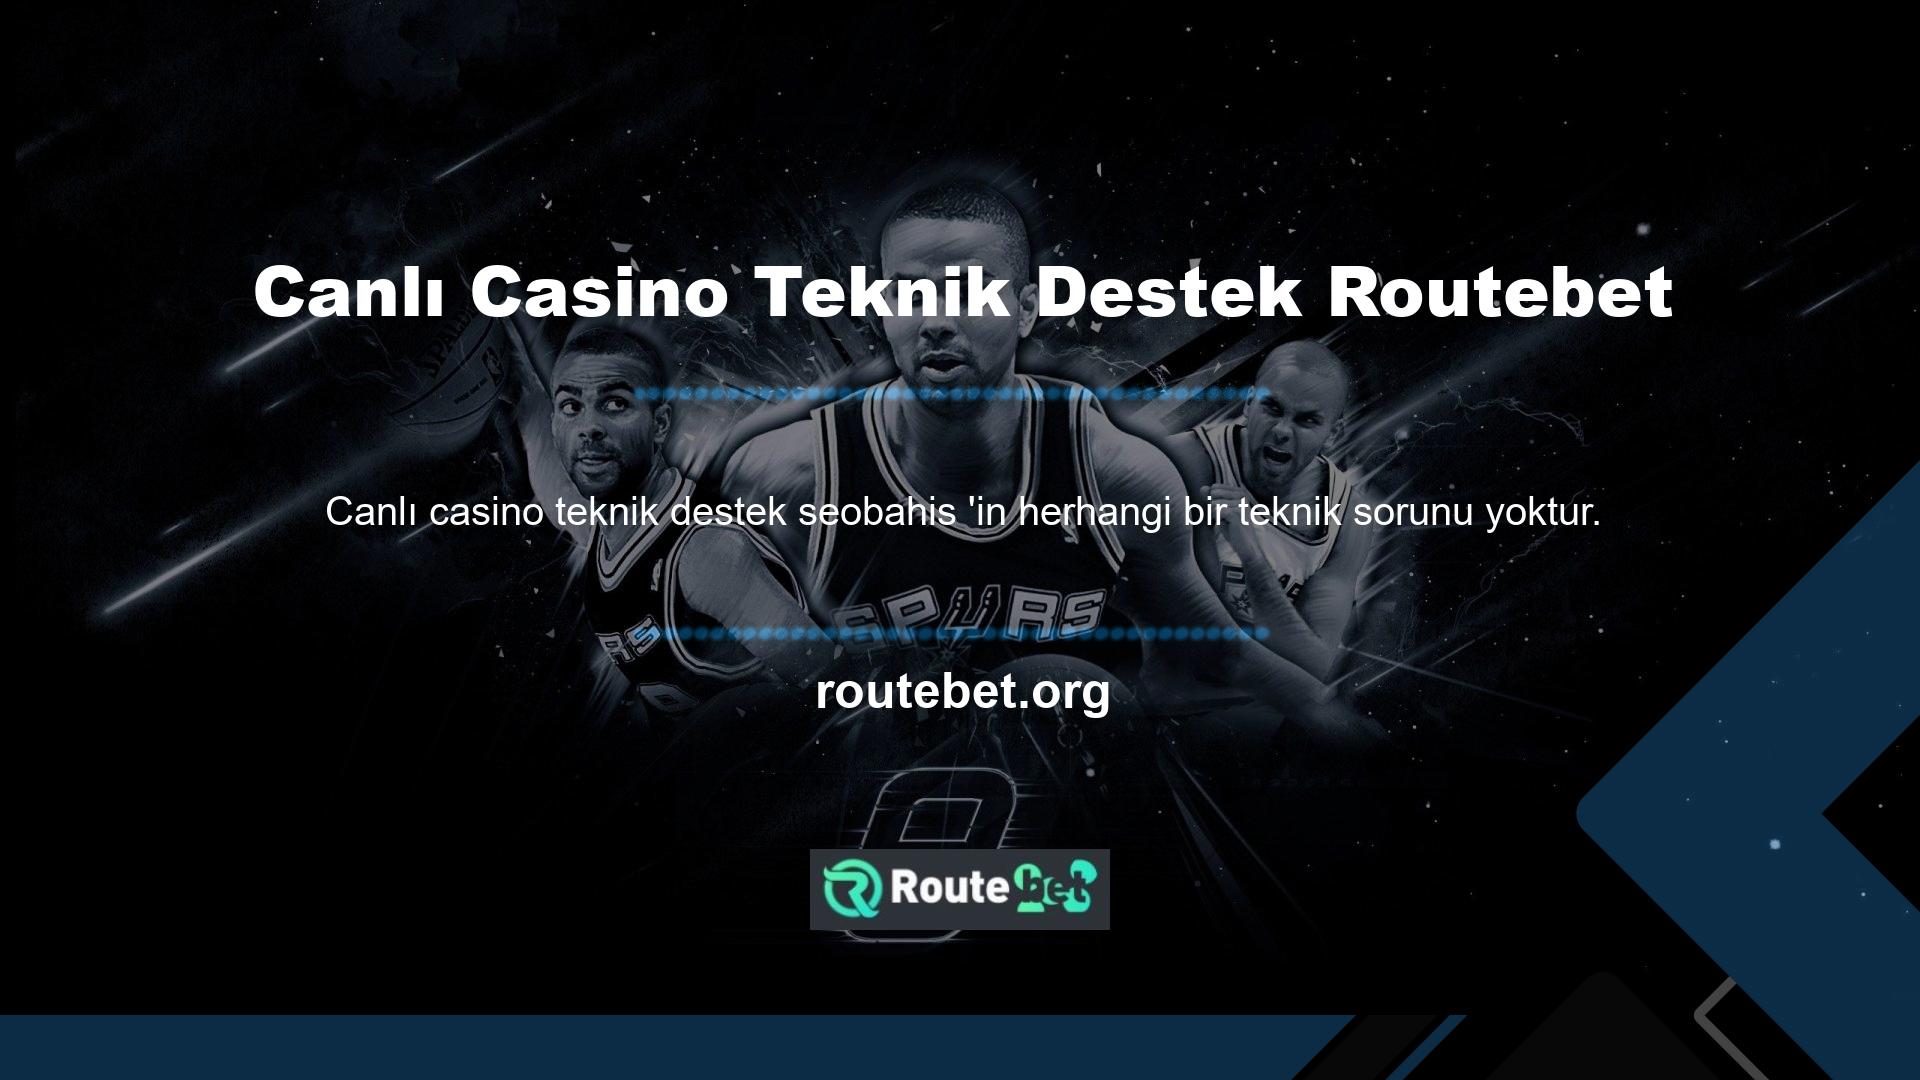 Kişisel ekipmanlarınızda ve internet bağlantınızda bir sorun olup olmadığını kontrol edebilir, gerekirse Routebet Canlı Casino Teknik Desteği arayabilirsiniz